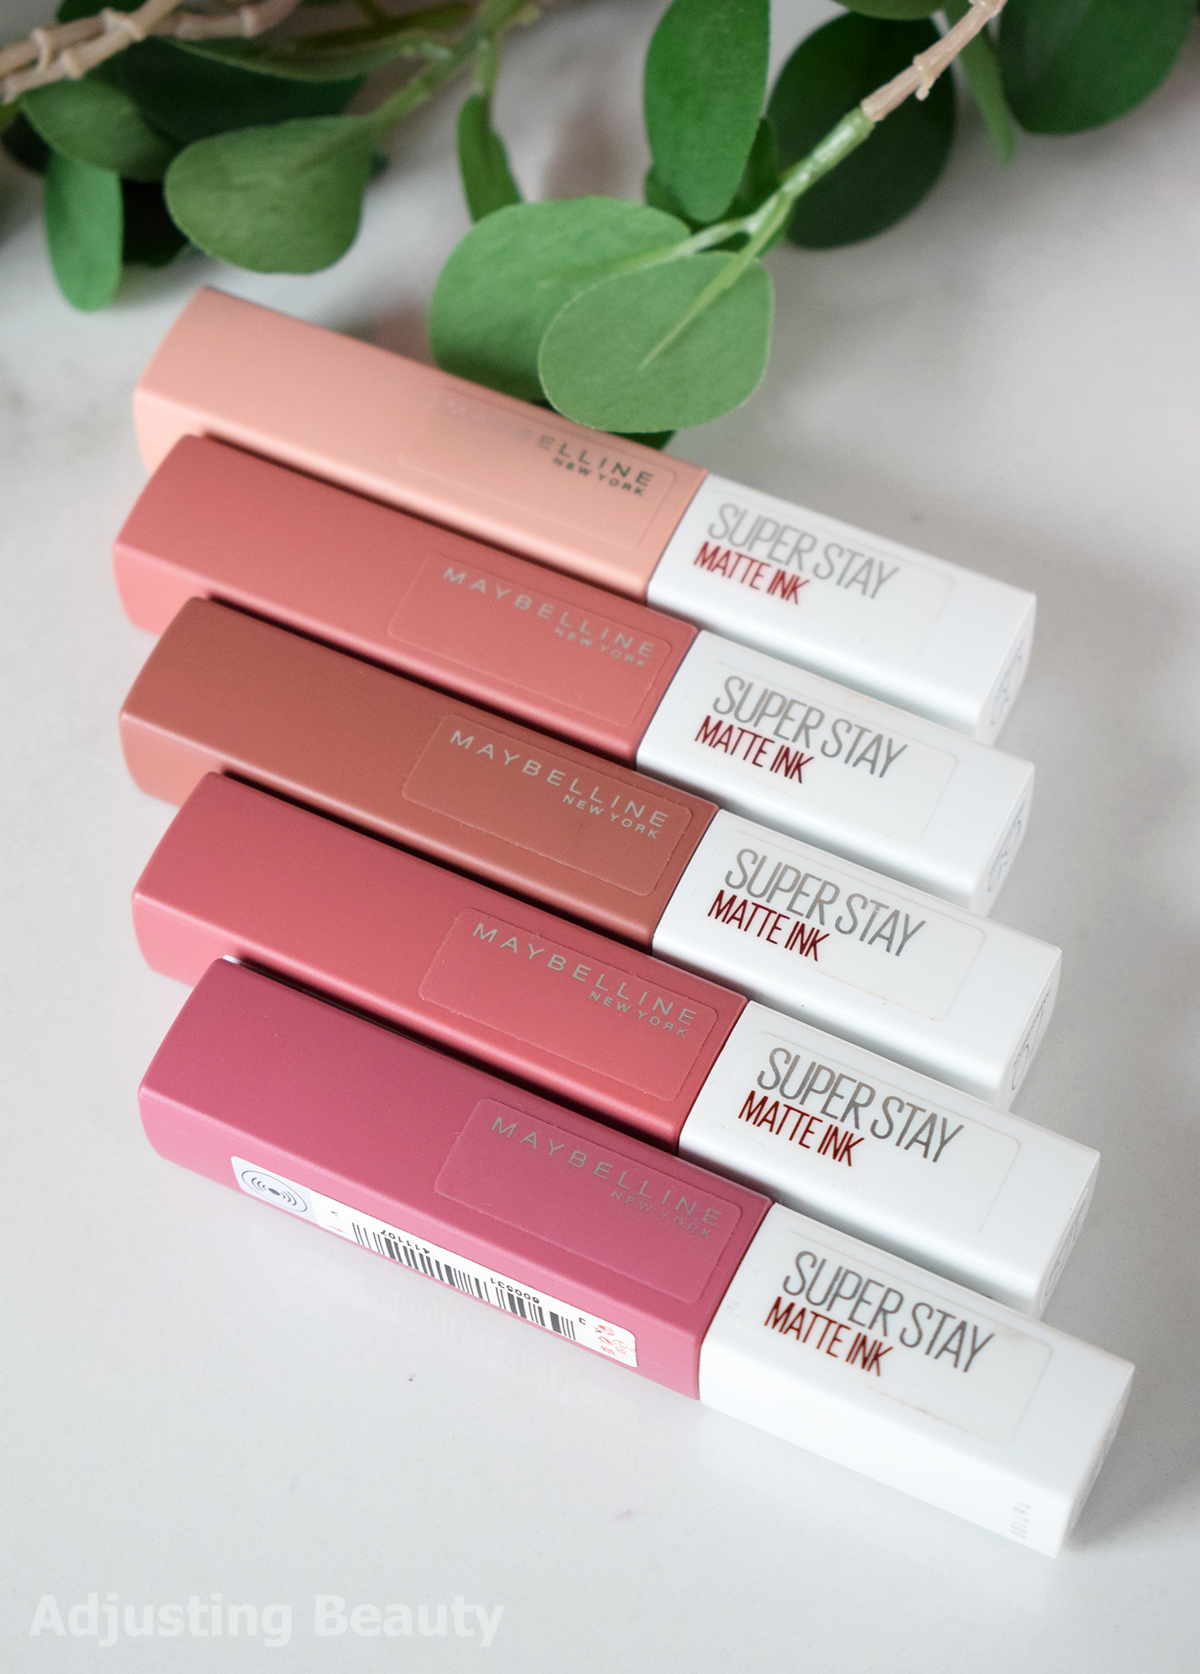 ochtendgloren Verhandeling Wiens Review: Maybelline Superstay Matte Ink Liquid Lipsticks - Adjusting Beauty